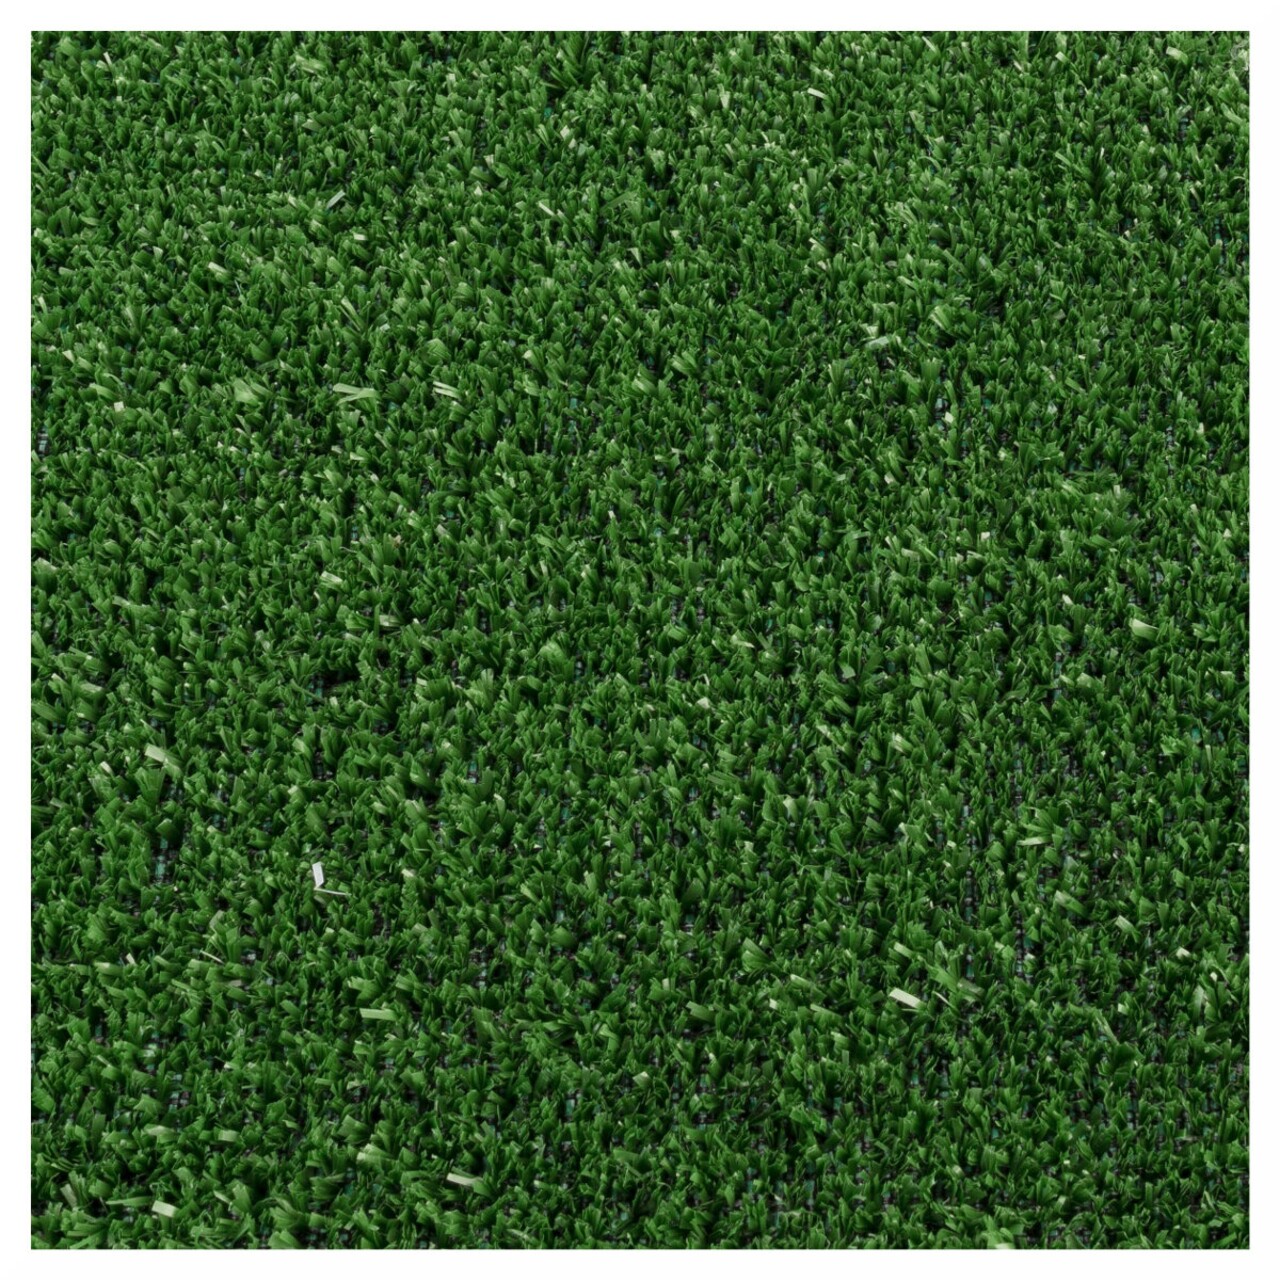 Gazon Artificial Evergreen 5 Mm, Decorino, 133x600 Cm, Polipropilena, Verde